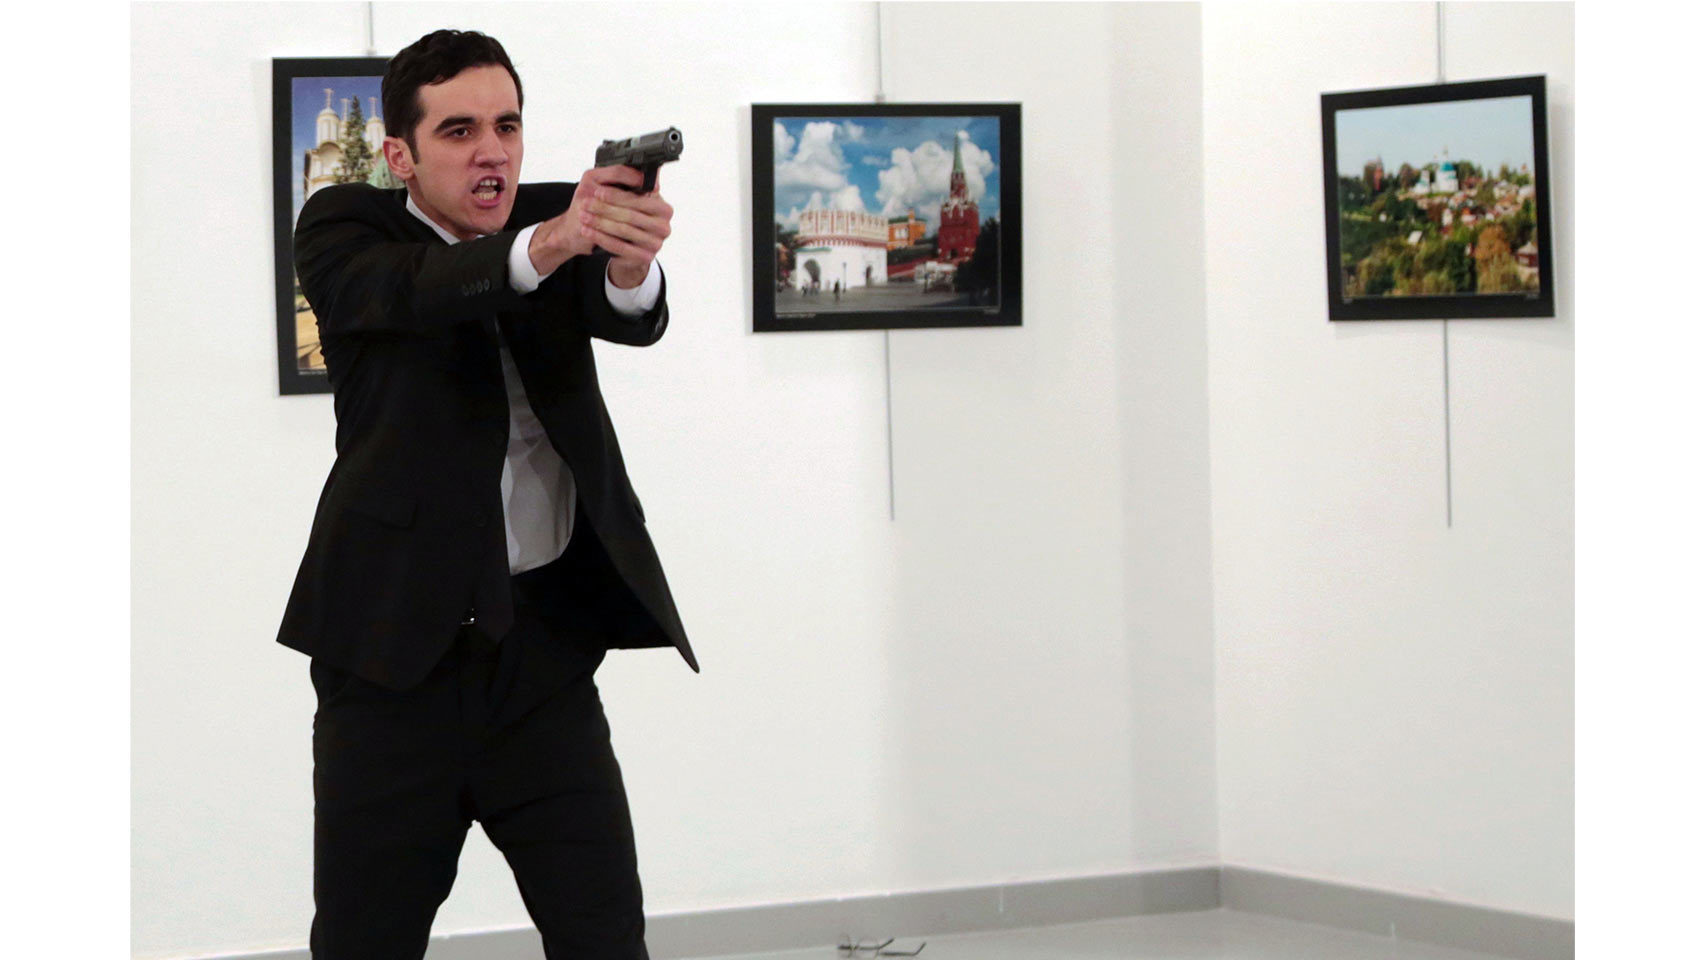 El asesino apunta al público tras disparar al embajador ruso./ Burhan Ozbilici / AP GTRES